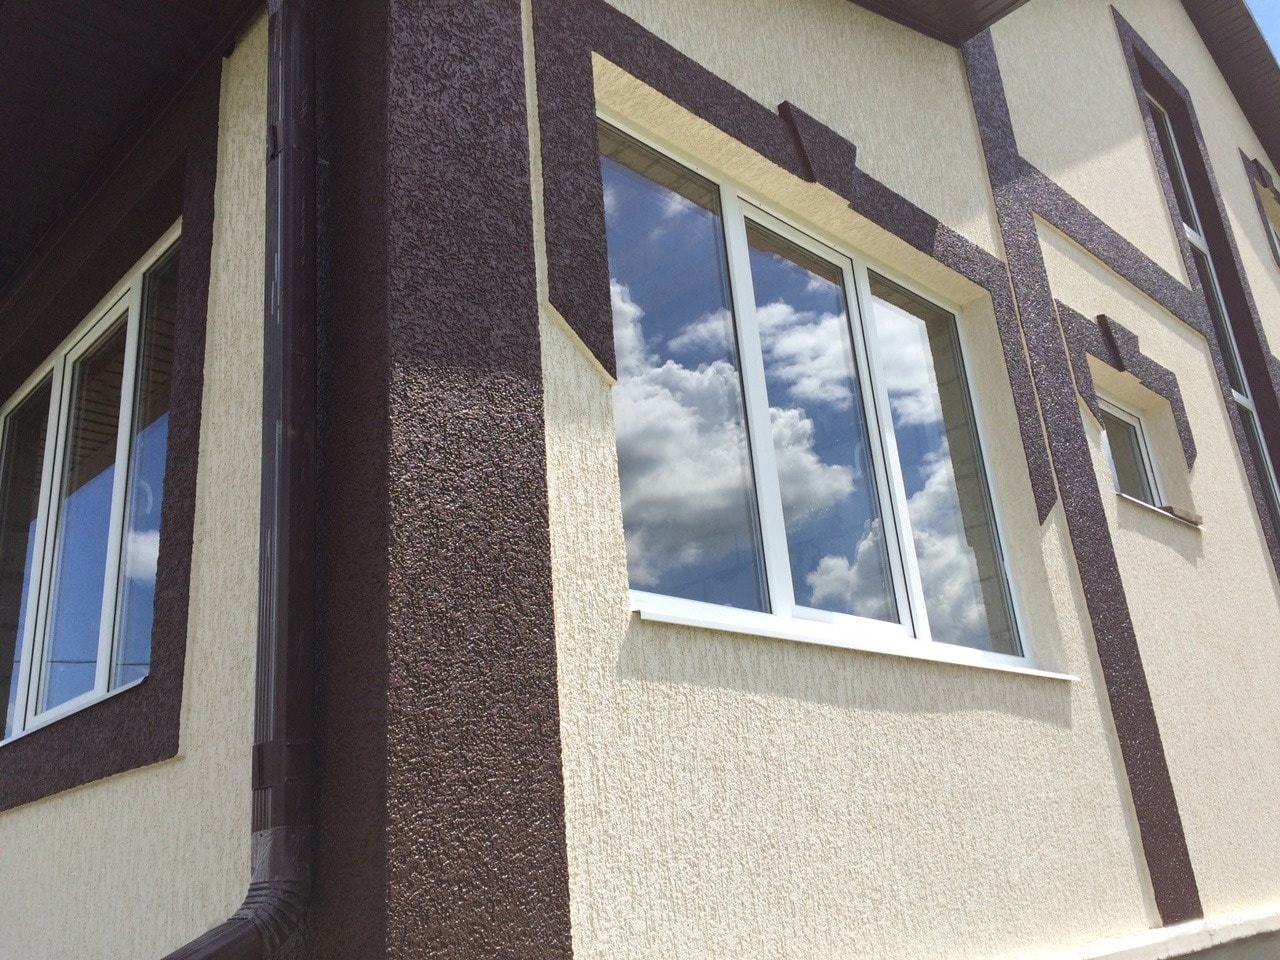 Какой материал лучше для отделки фасада дома | Пикабу